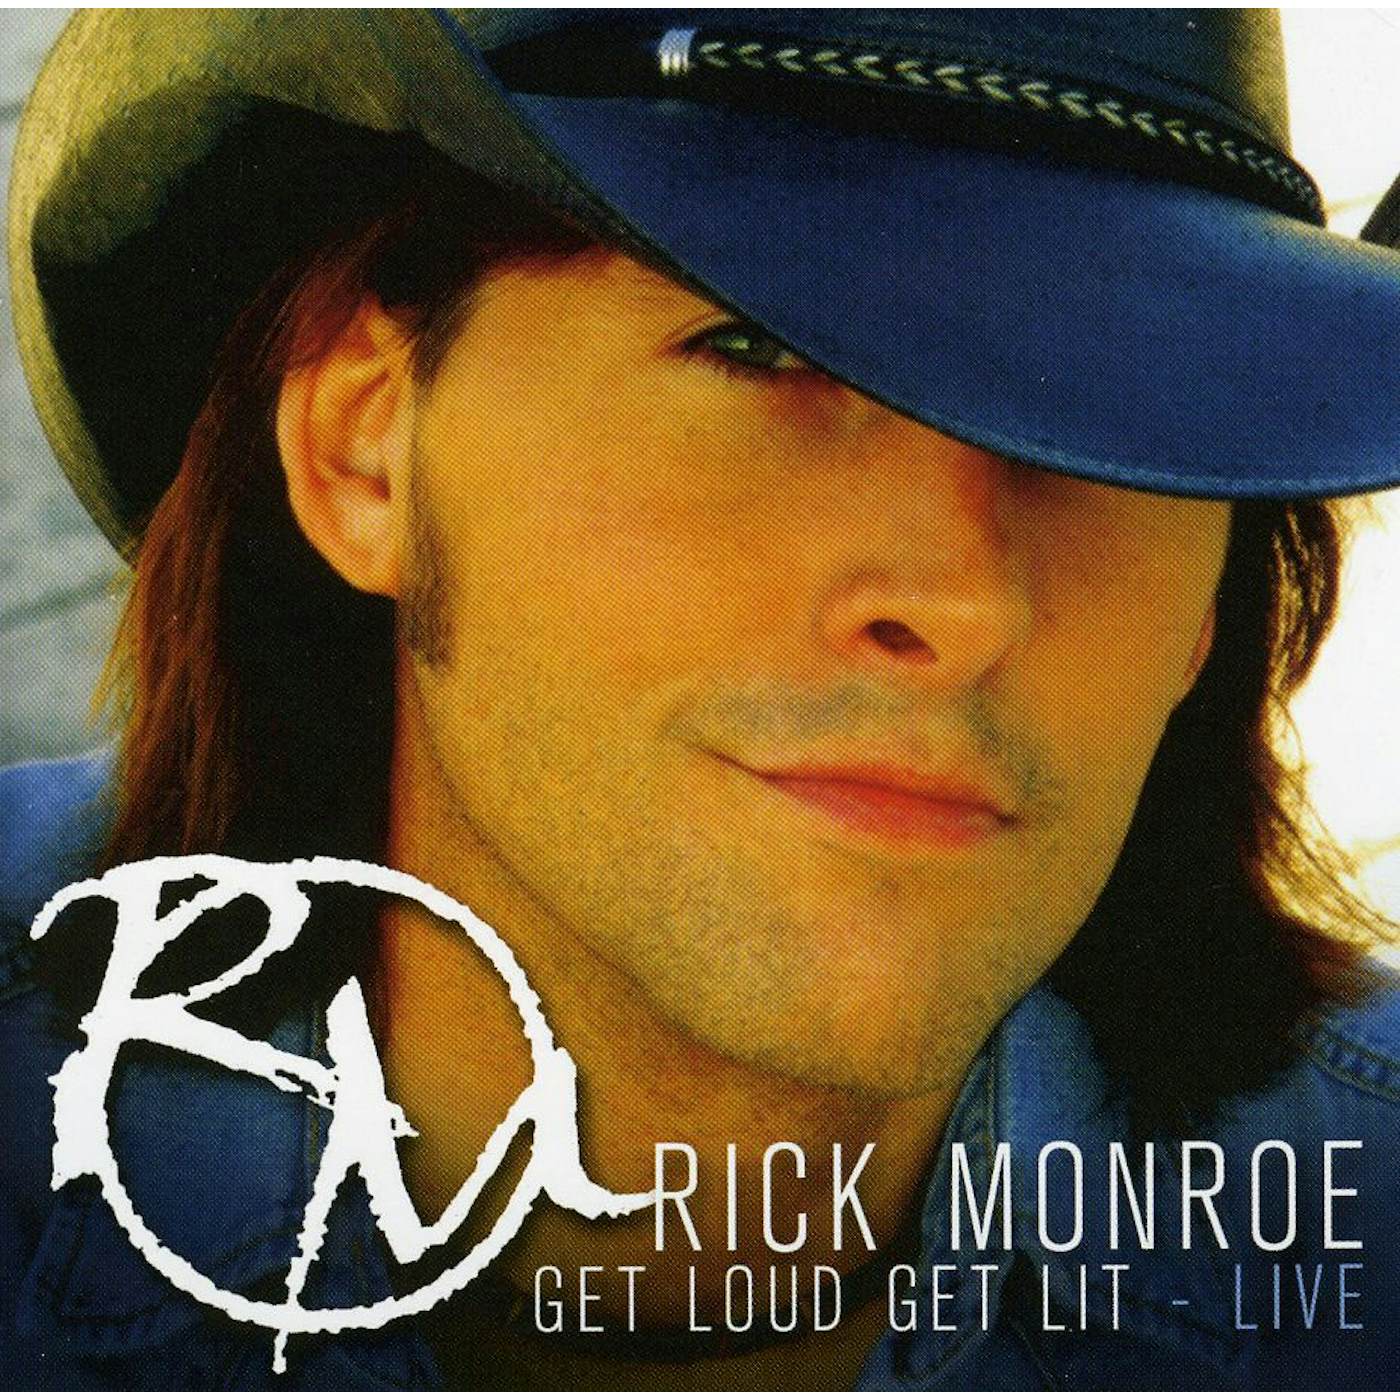 Rick Monroe LIVE CD